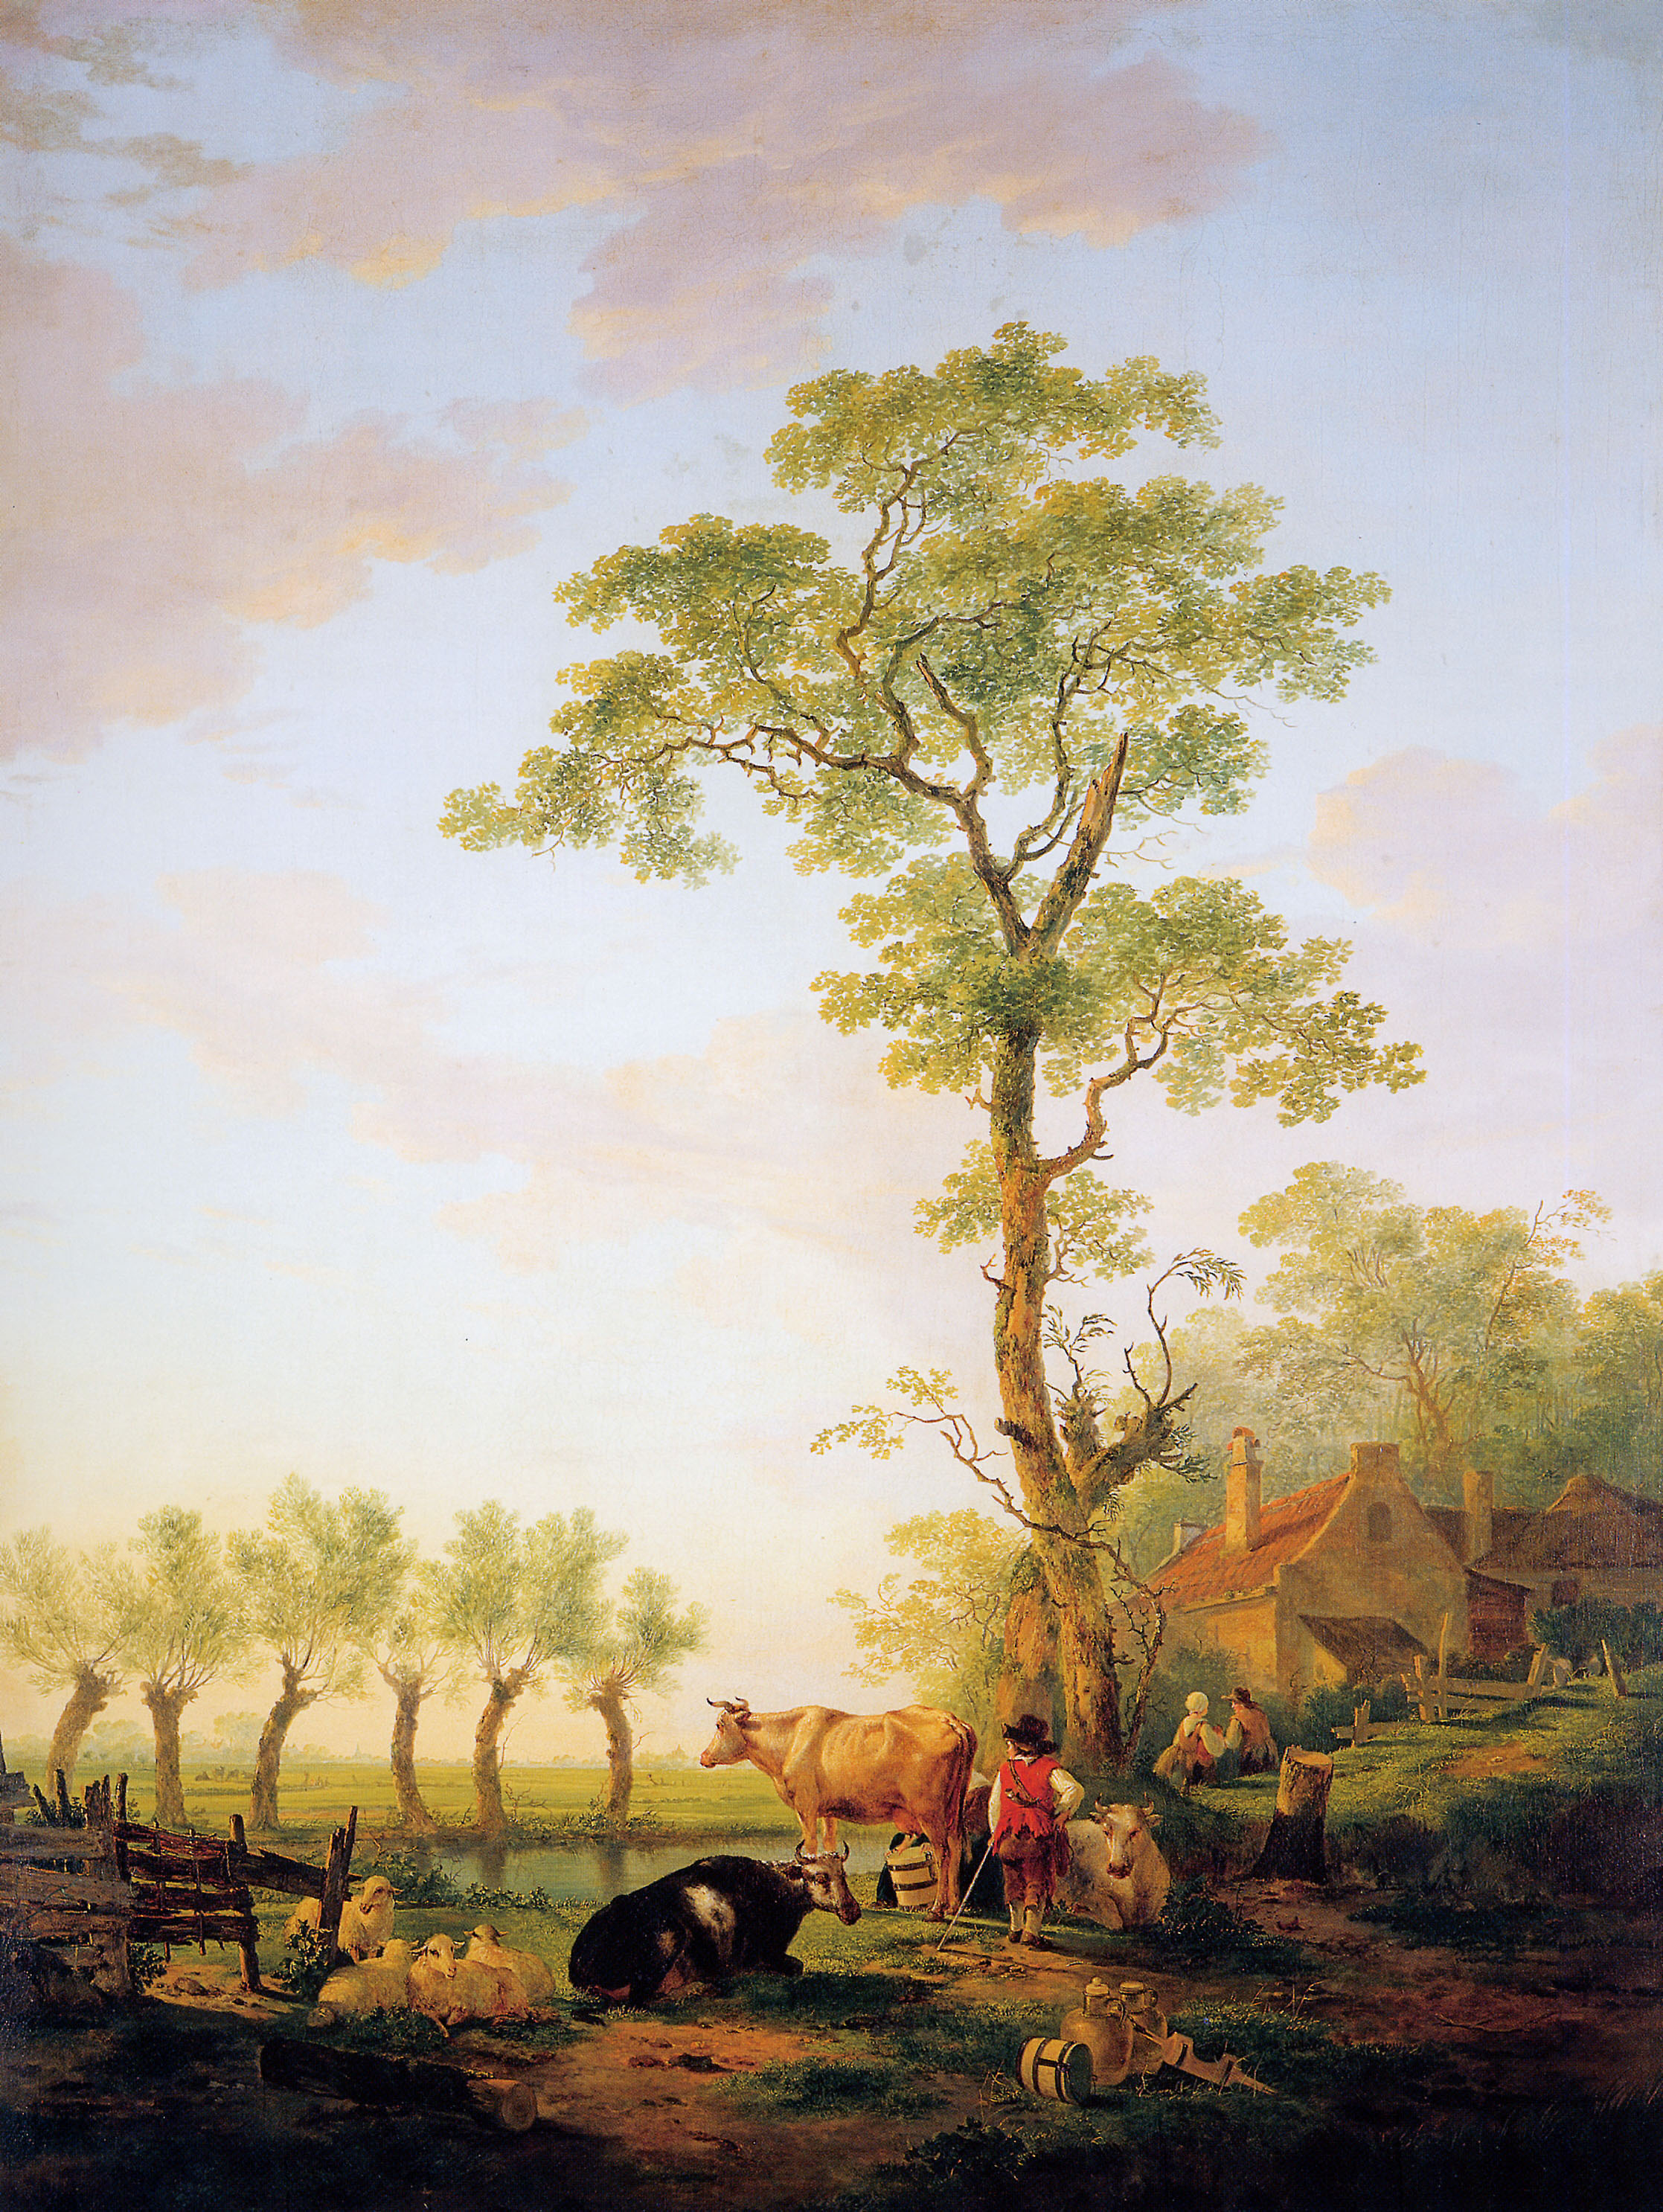 المشهد الهولندي مع الماشية والمزرعة - Dutch landscape with cattle and farm - مقهى جرير الثقافي